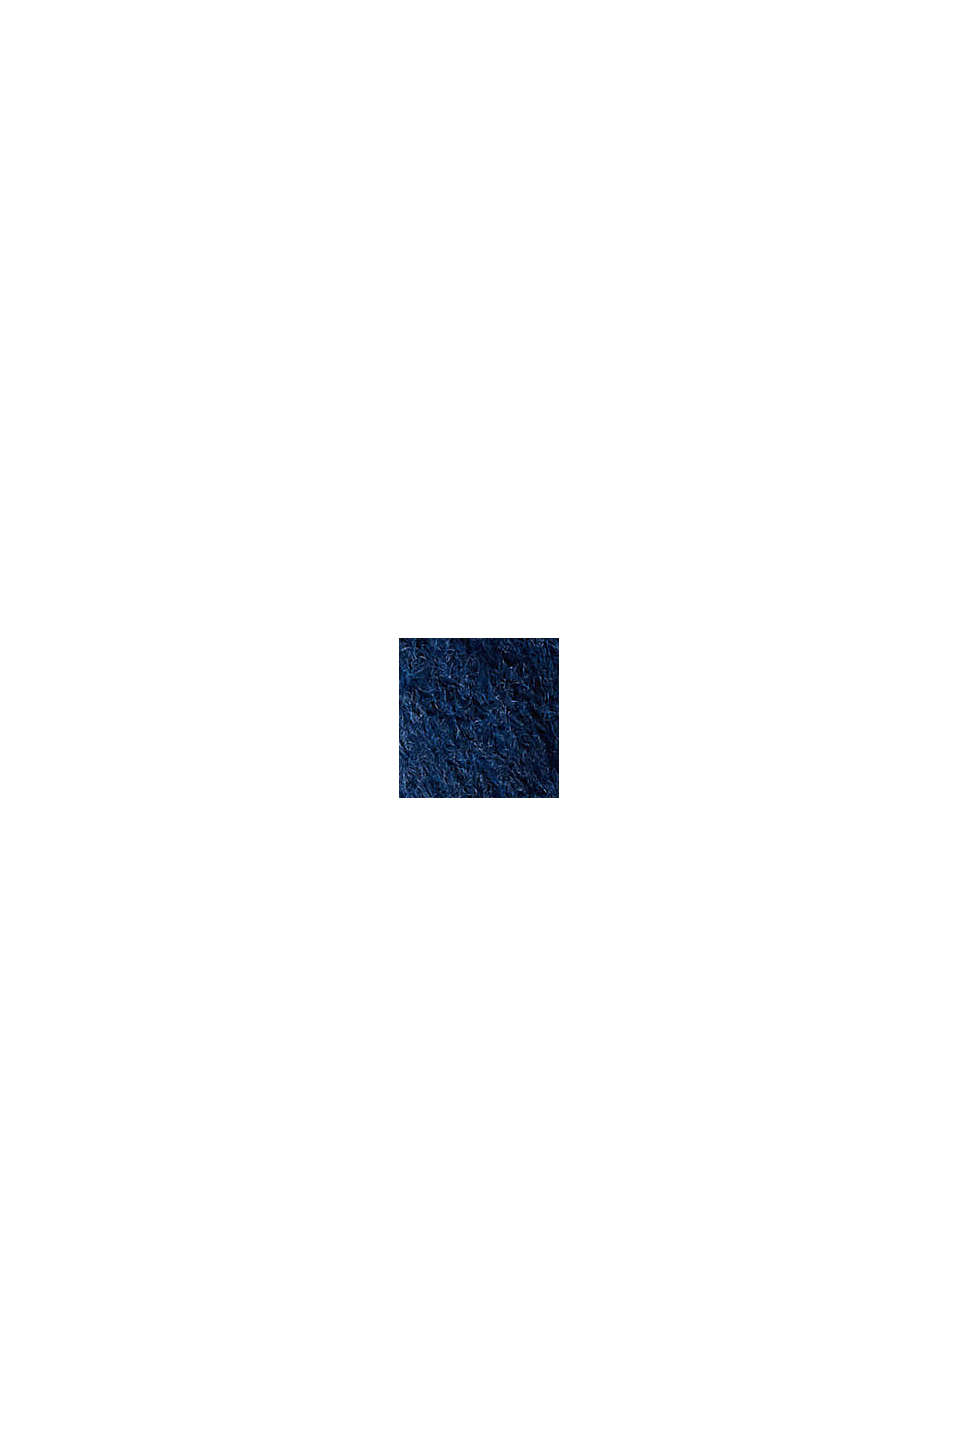 Genanvendte materialer: strikcardigan med uld, NEW DARK BLUE, swatch